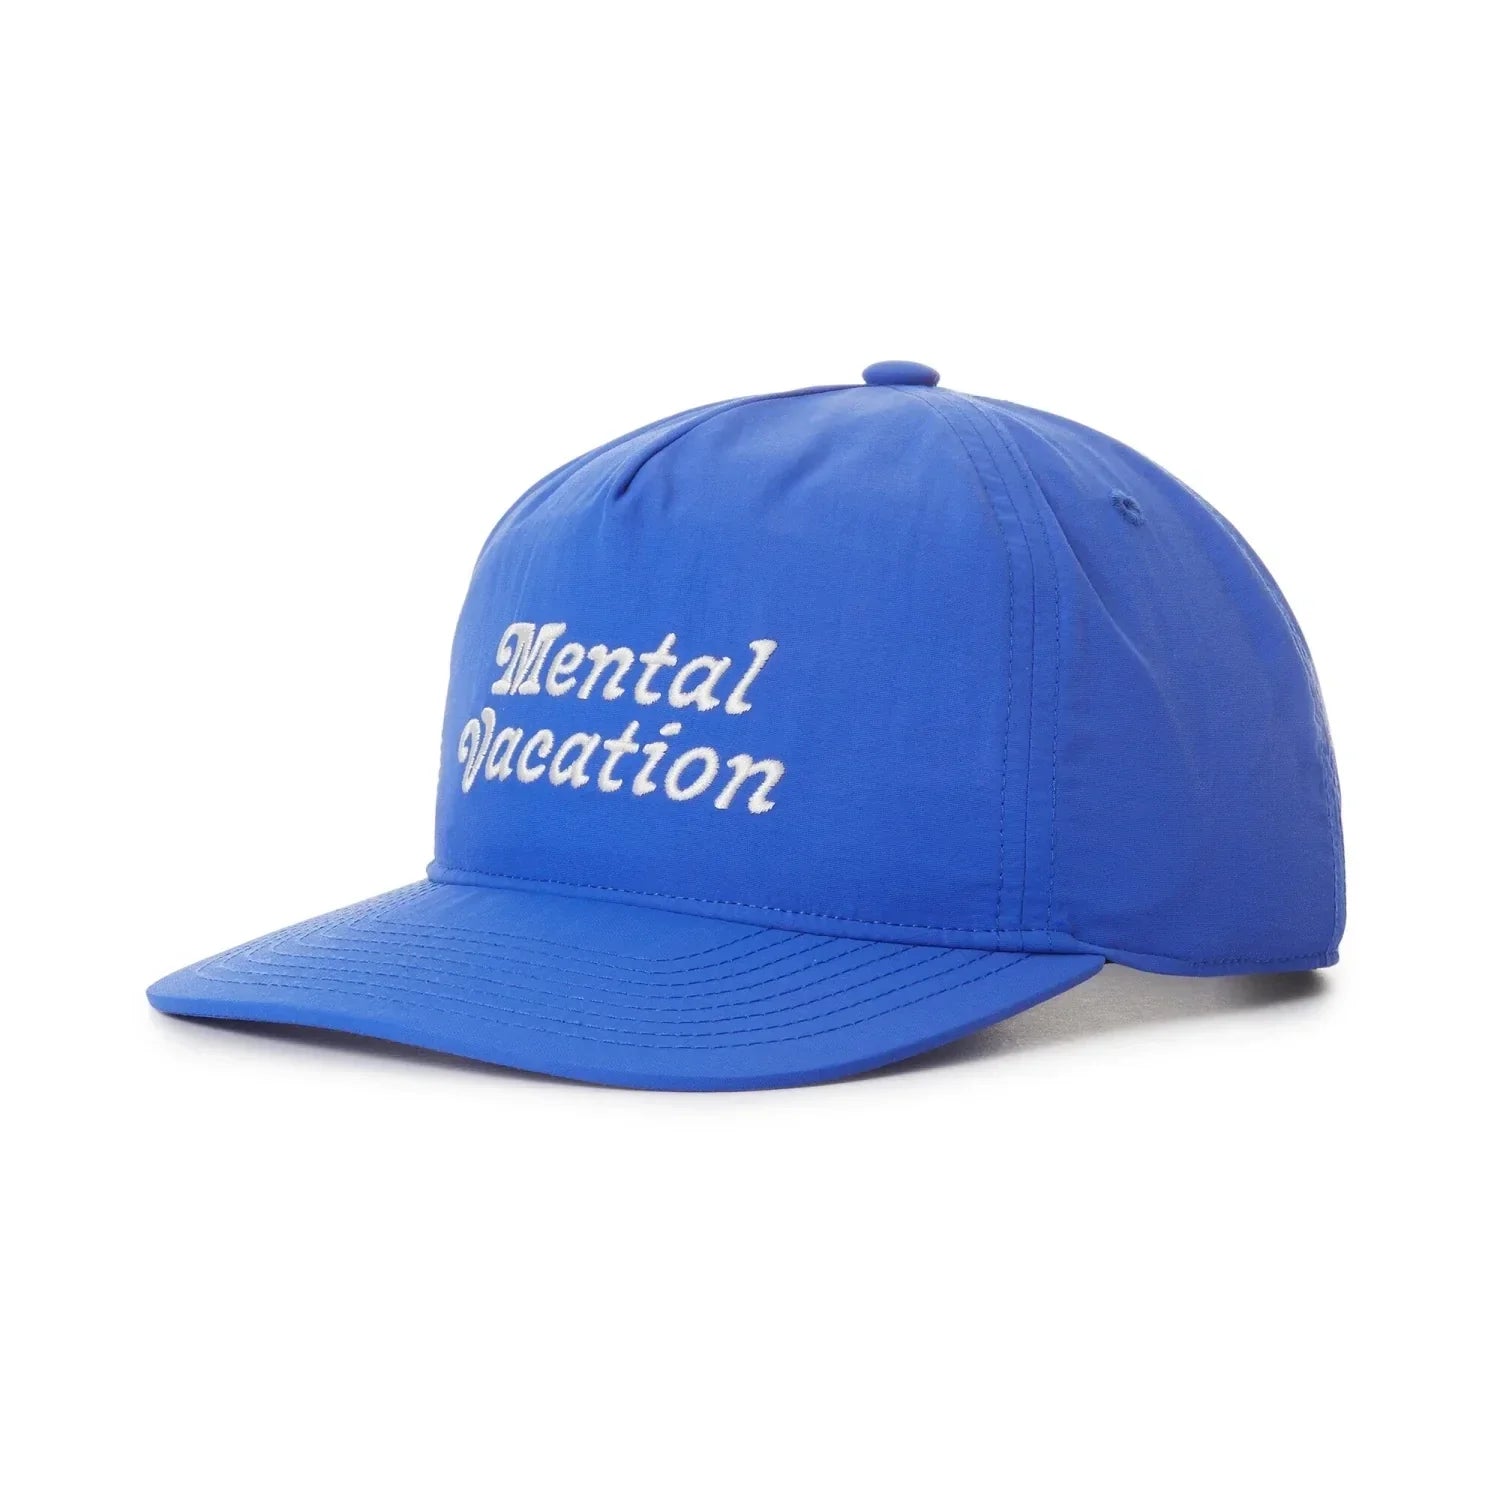 Katin HATS - HATS BILLED - HATS BILLED Mental Vacation Hat BAYB BAY BLUE O S